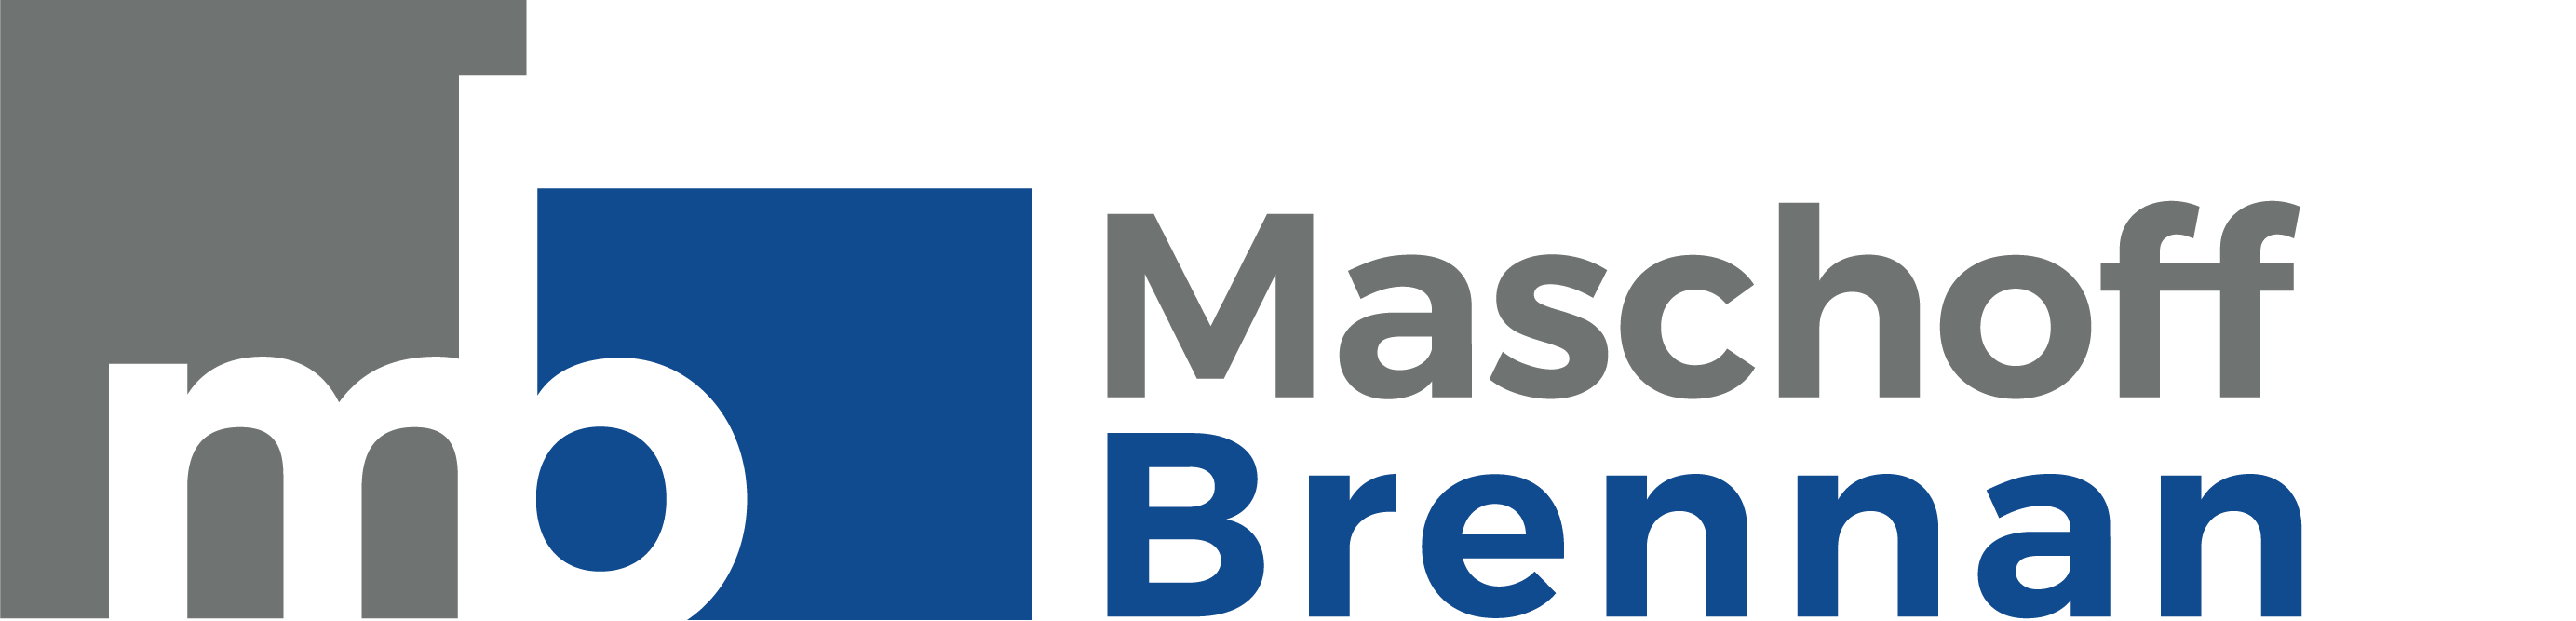 Maschoff Brennan logo